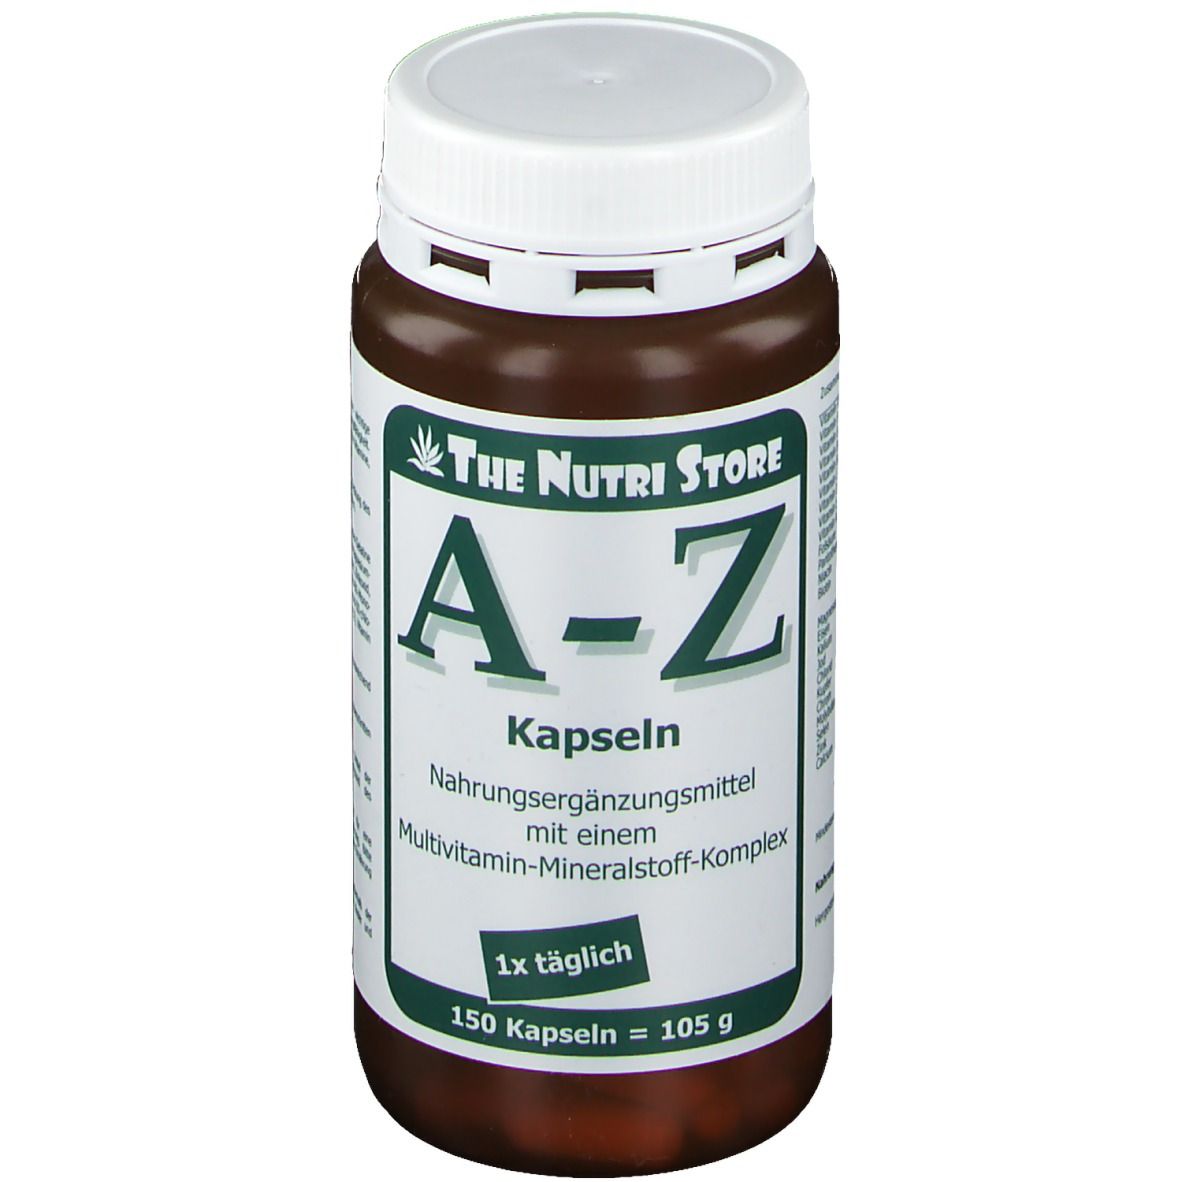 Image of A-Z Multivitamin Mineralstoff Kapseln